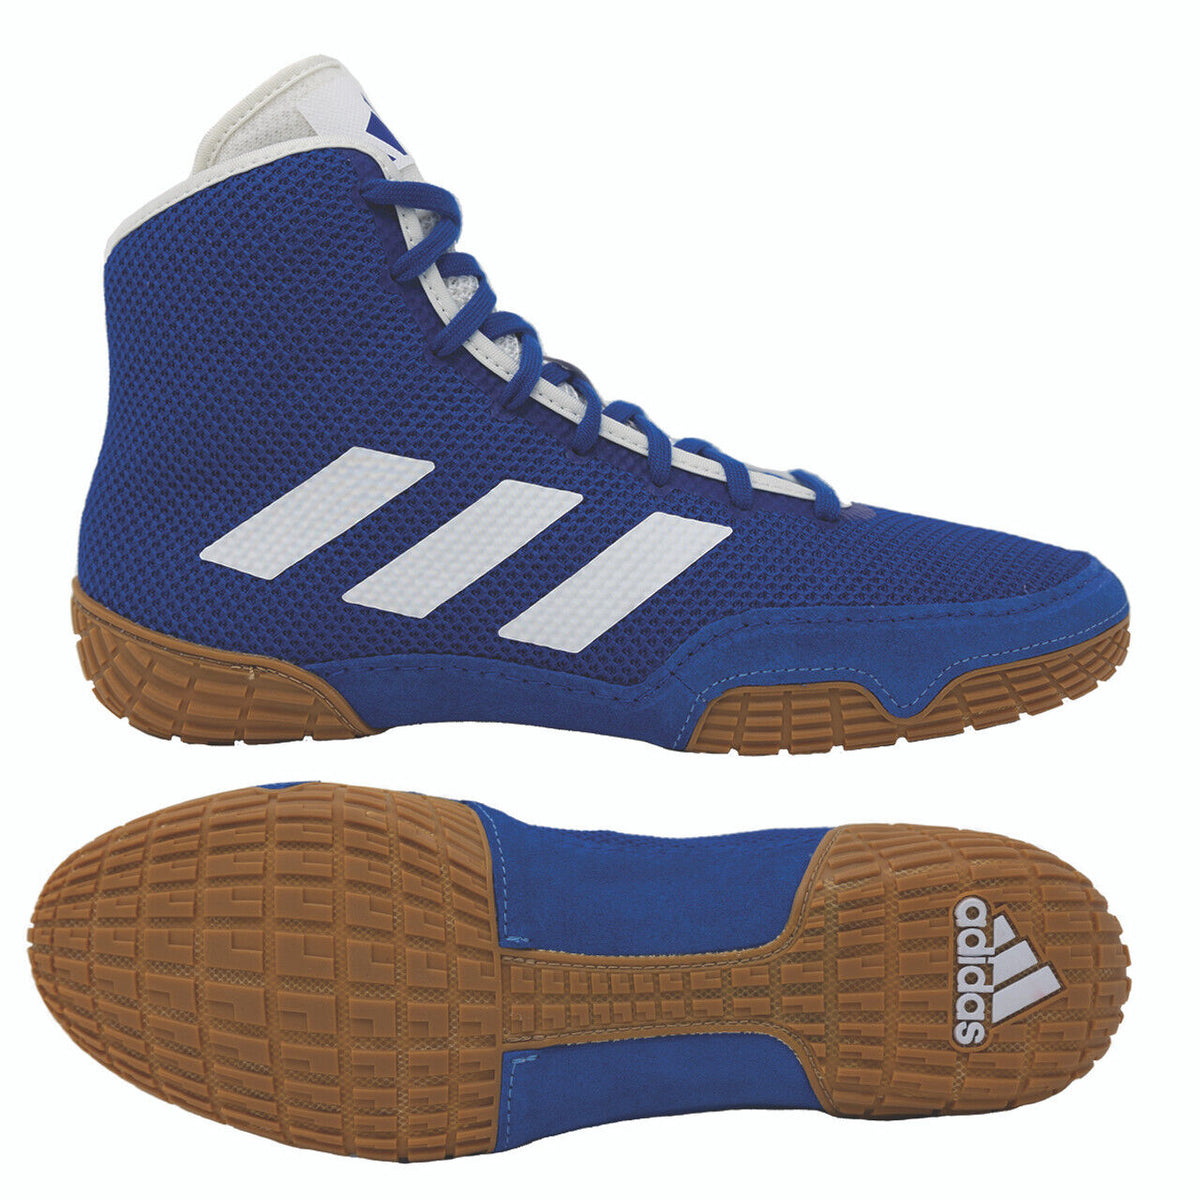 Le scarpe da wrestling Adidas Tech-Fall nel colore blu. Ora al miglior prezzo su Phantom Athletics . Le scarpe da wrestling Adidas sono tra le scarpe più ricercate dai lottatori di tutto il mondo poiché offrono una qualità superiore unita al massimo comfort. La suola robusta fornisce trazione sul tappeto da wrestling. 